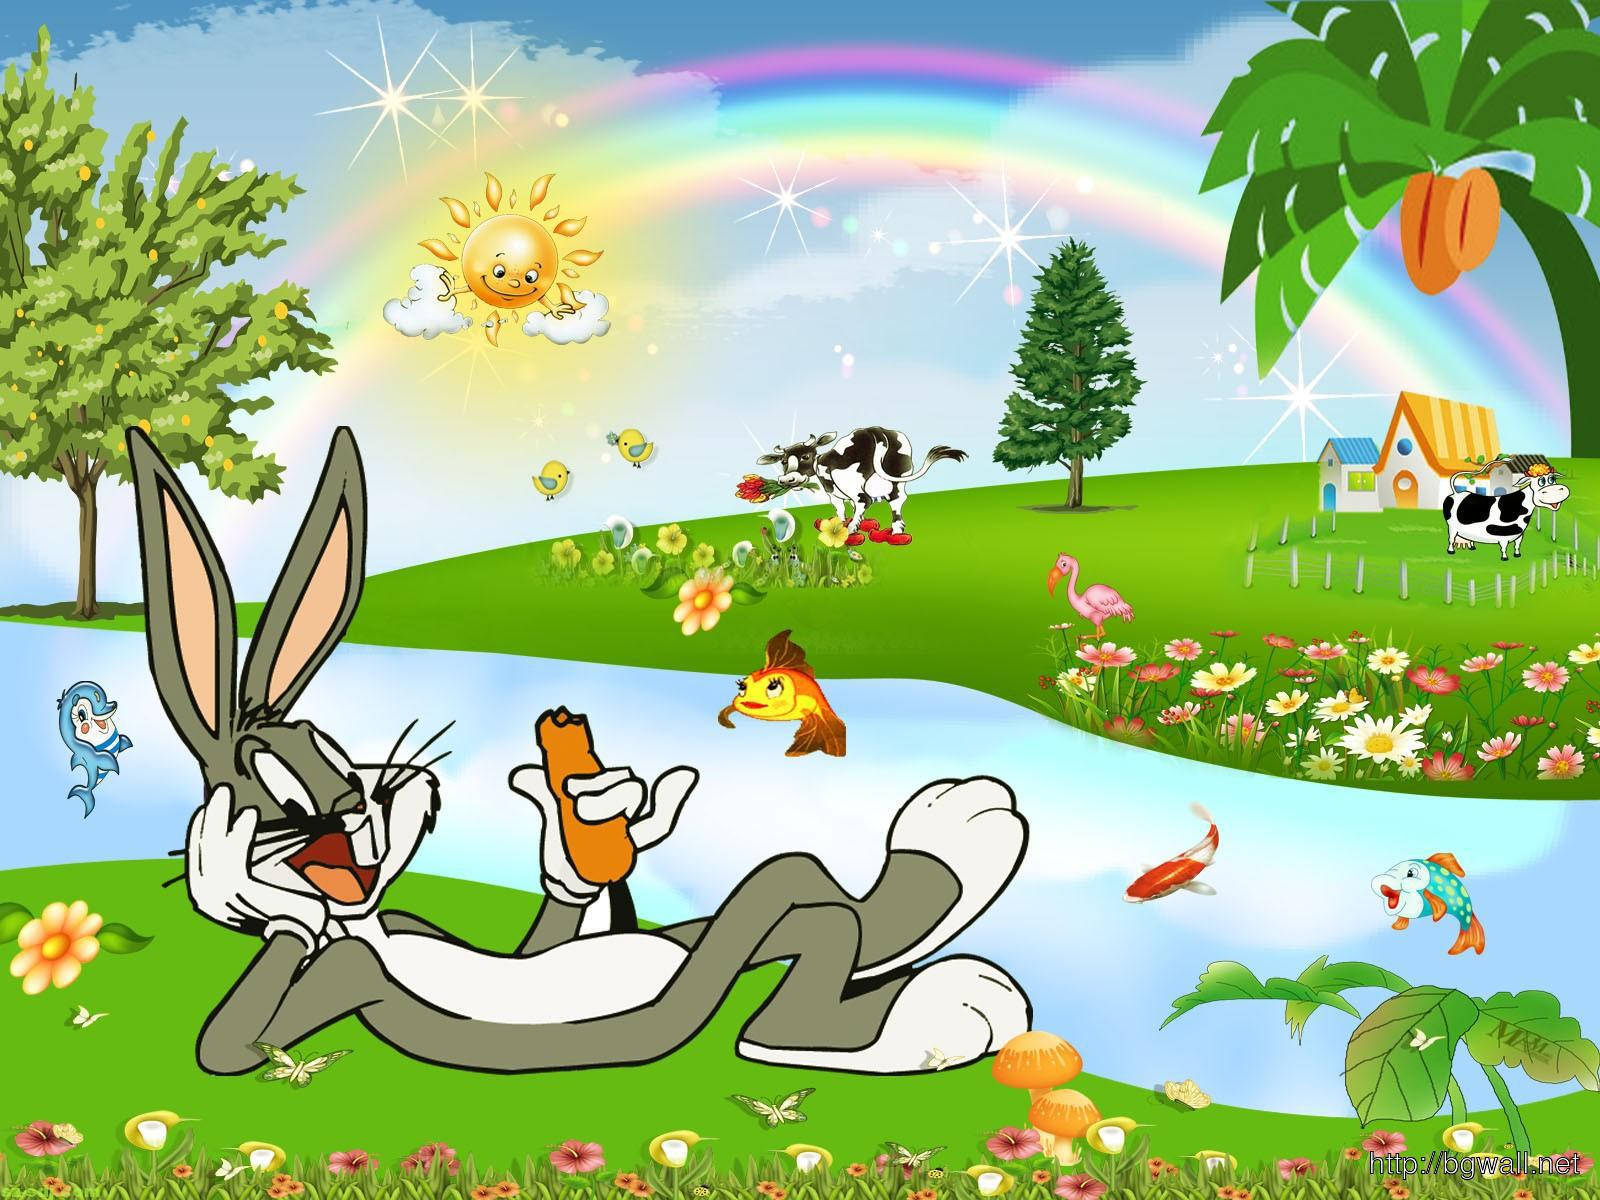 Bugs Bunny Cute Cartoon Character Wallpaper